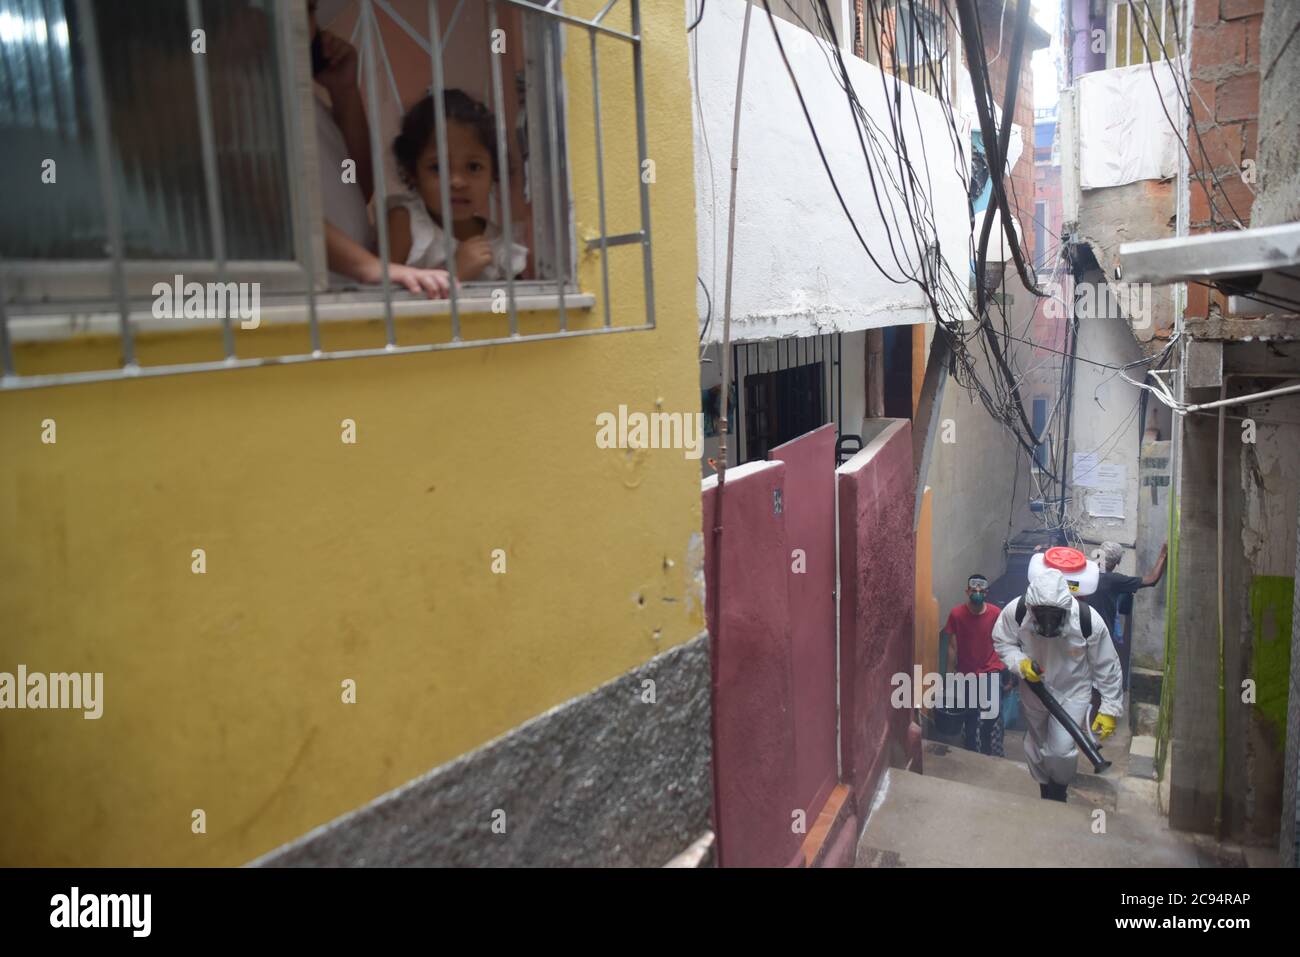 RIO DE JANEIRO, BRASILE, APRILE, 10,2020: I residenti della favela dona marta a rio de janeiro raccogliere il covid-19 con la propria pulizia Foto Stock